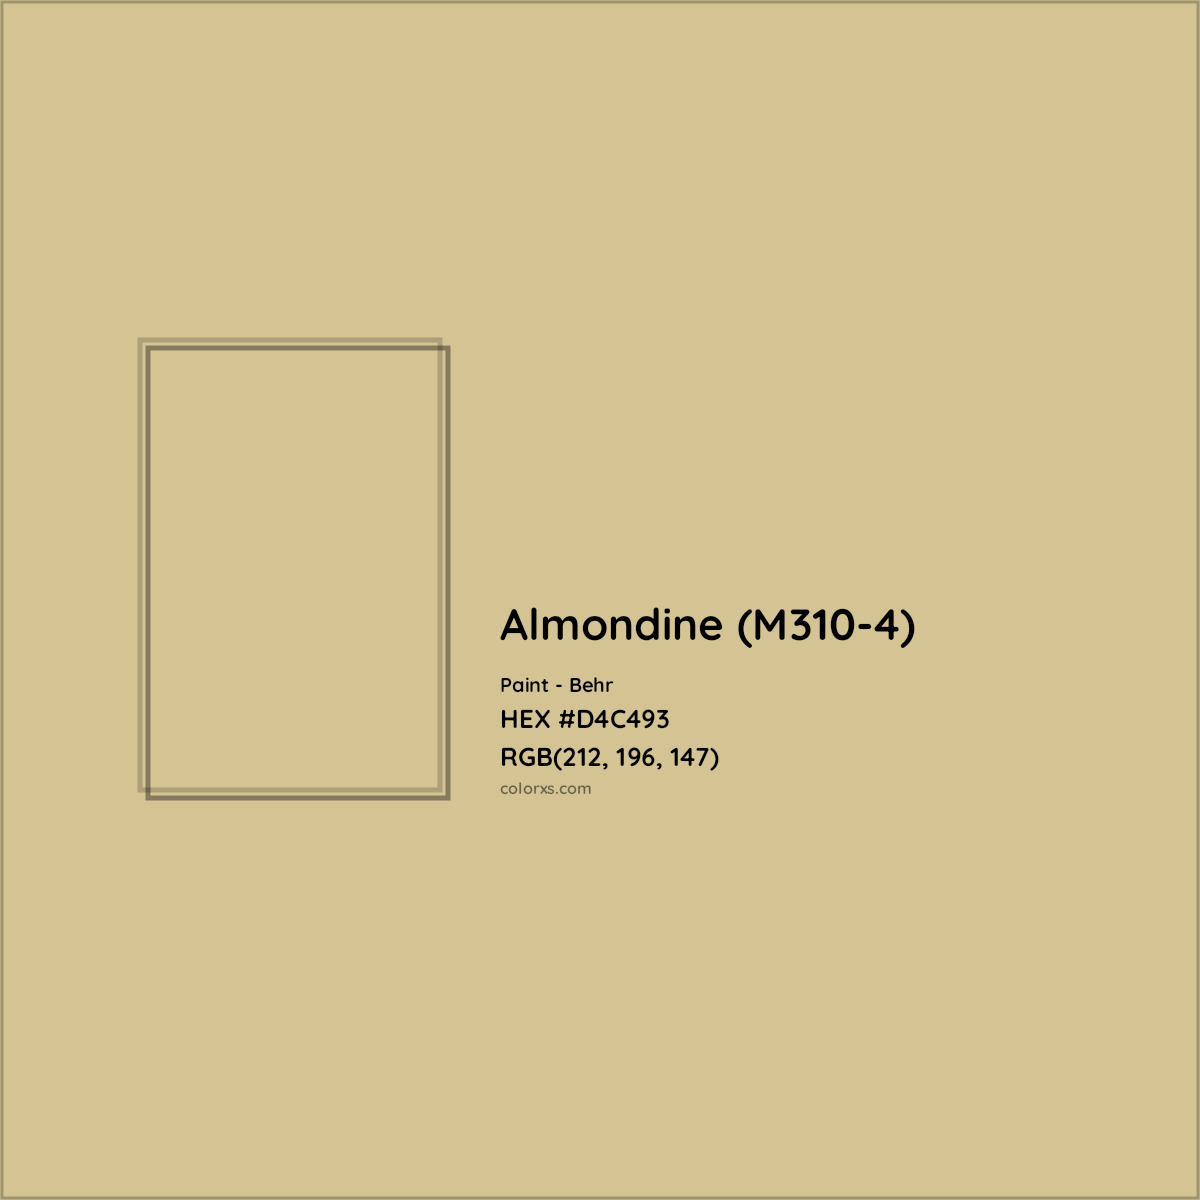 HEX #D4C493 Almondine (M310-4) Paint Behr - Color Code